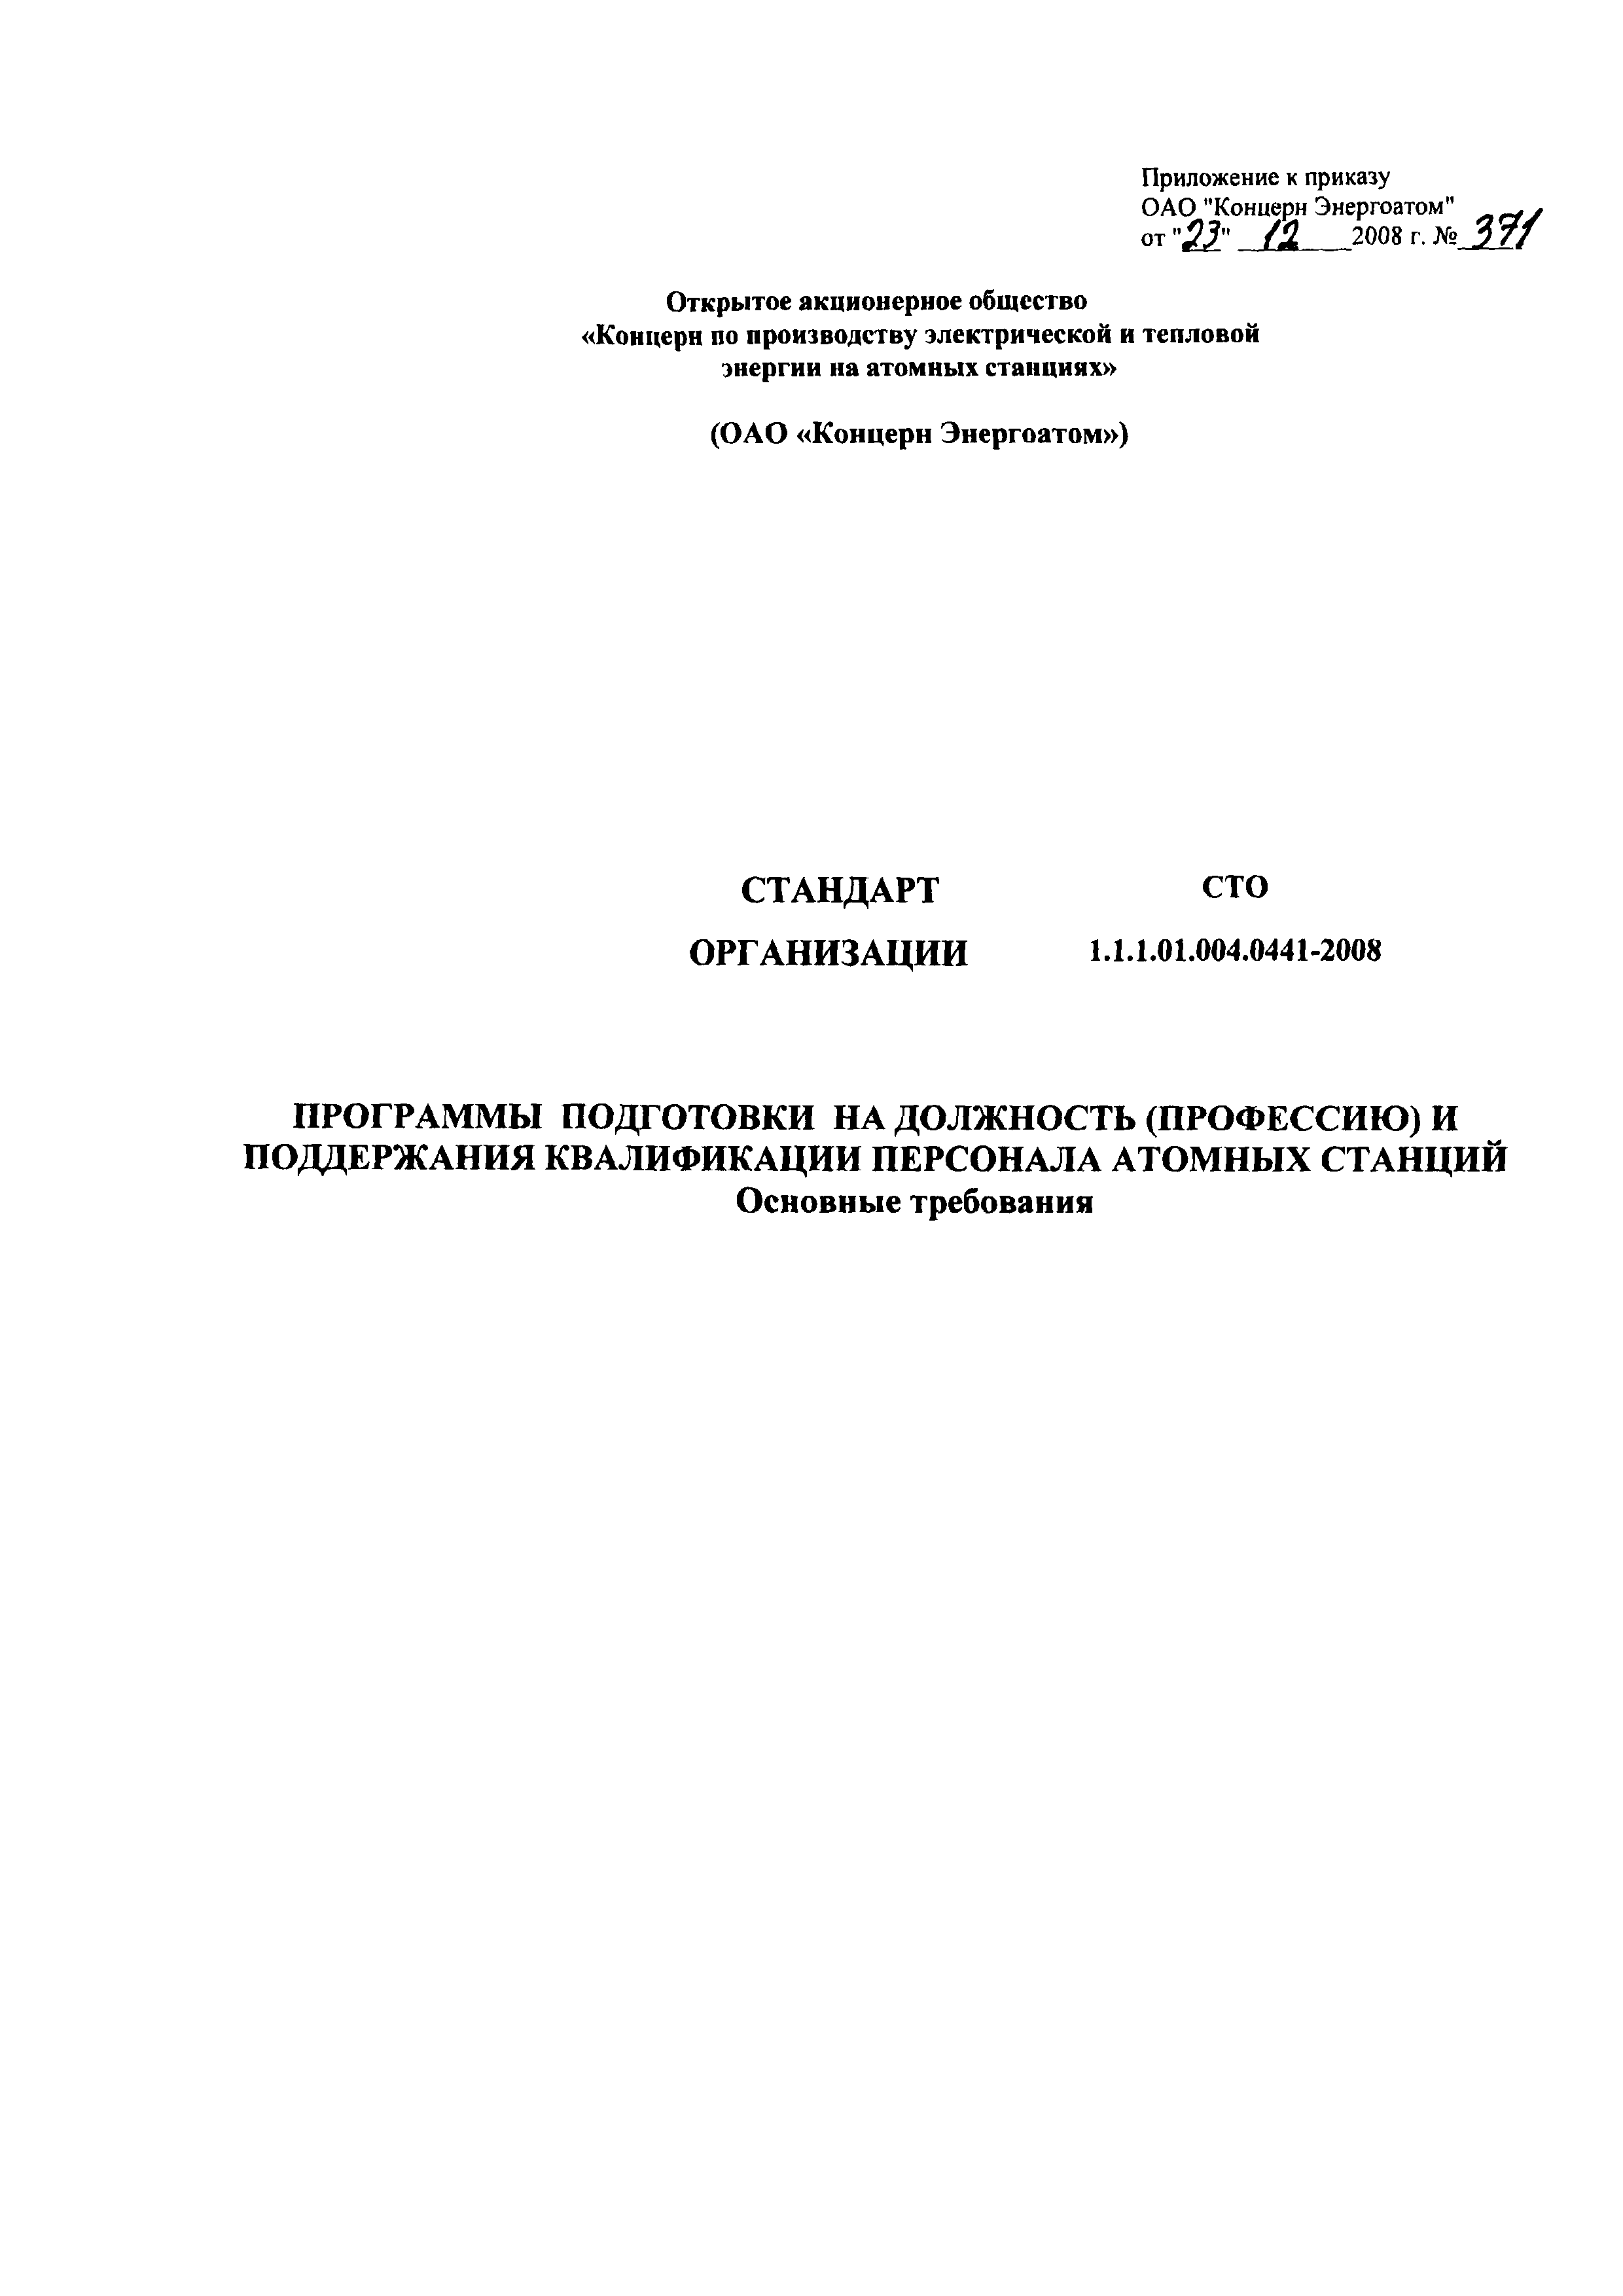 СТО 1.1.1.01.004.0441-2008